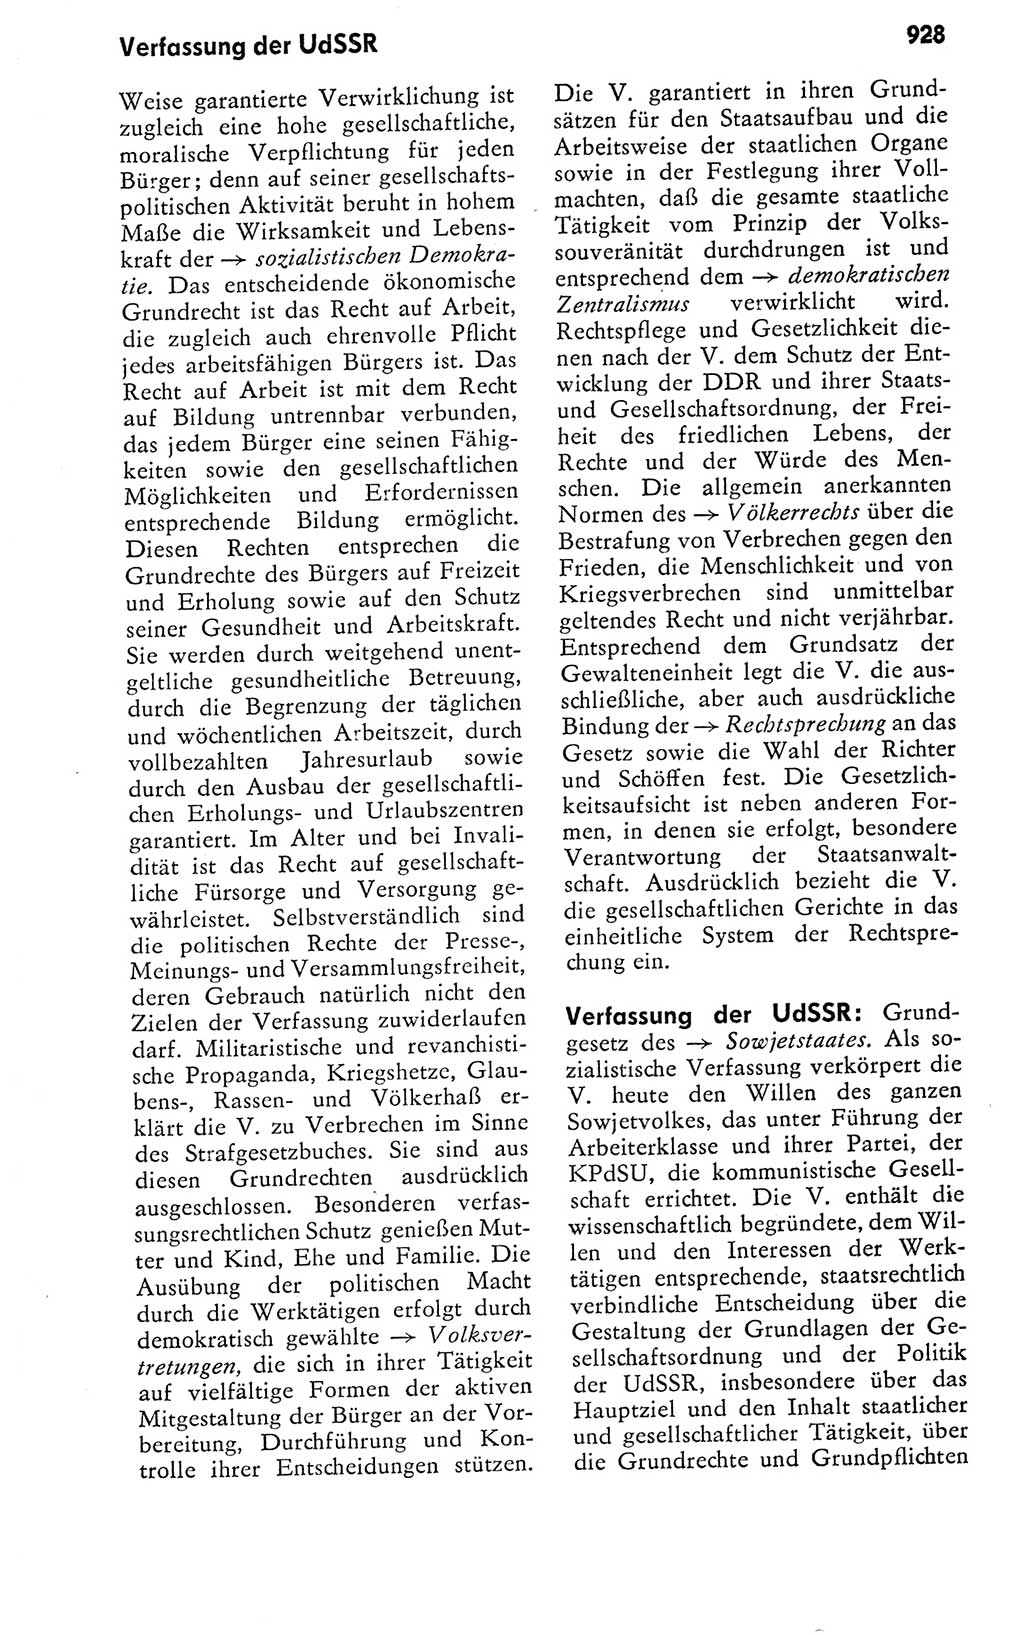 Kleines politisches Wörterbuch [Deutsche Demokratische Republik (DDR)] 1978, Seite 928 (Kl. pol. Wb. DDR 1978, S. 928)